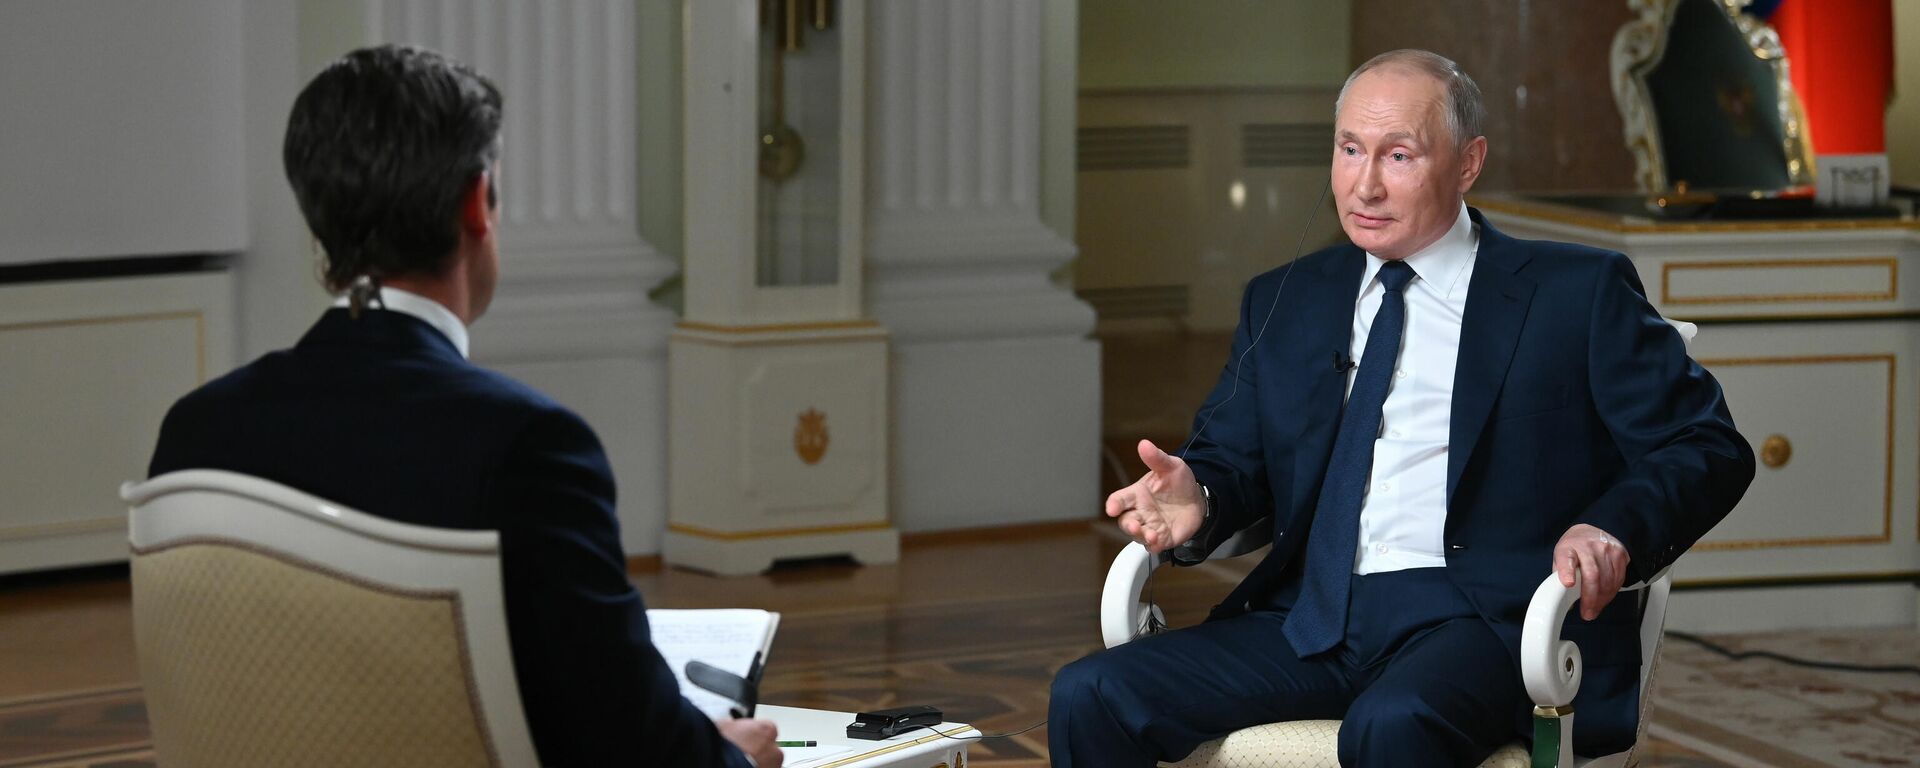 Президент РФ В. Путин дал интервью американской телекомпании NBC - Sputnik Ўзбекистон, 1920, 16.06.2021